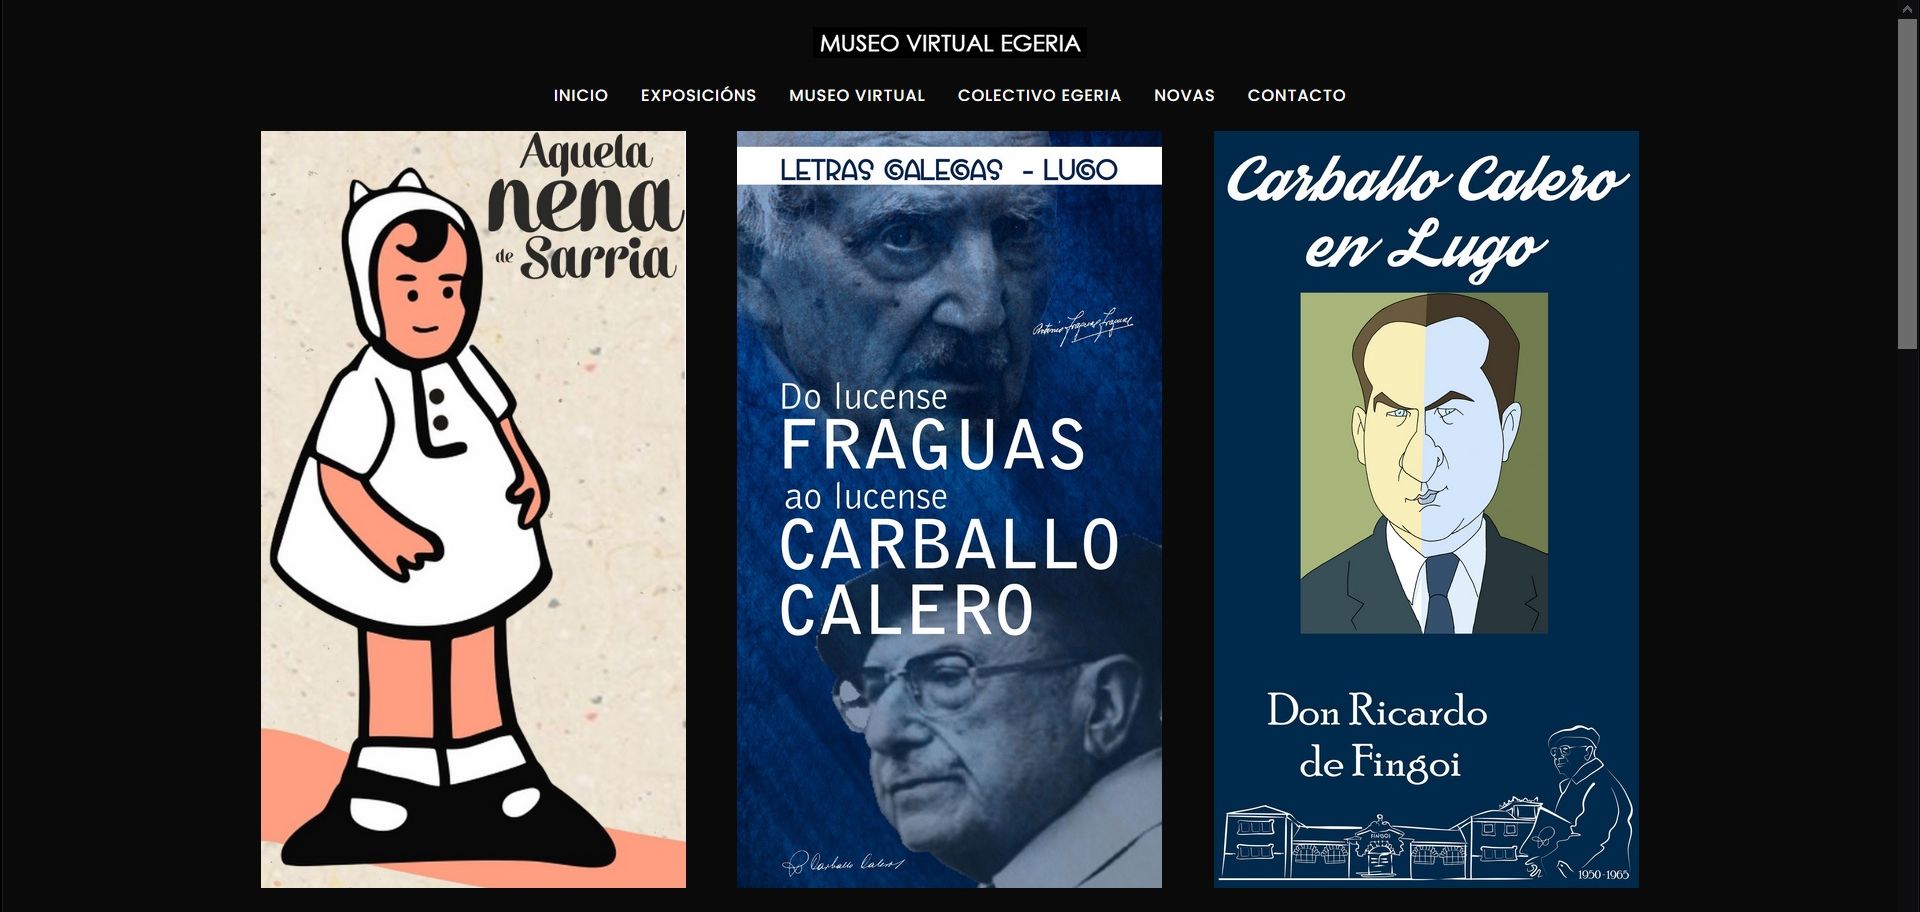 O Colectivo Egeria presenta o seu Museo Virtual, que inclúe a exposición "Aquela nena de Sarria"